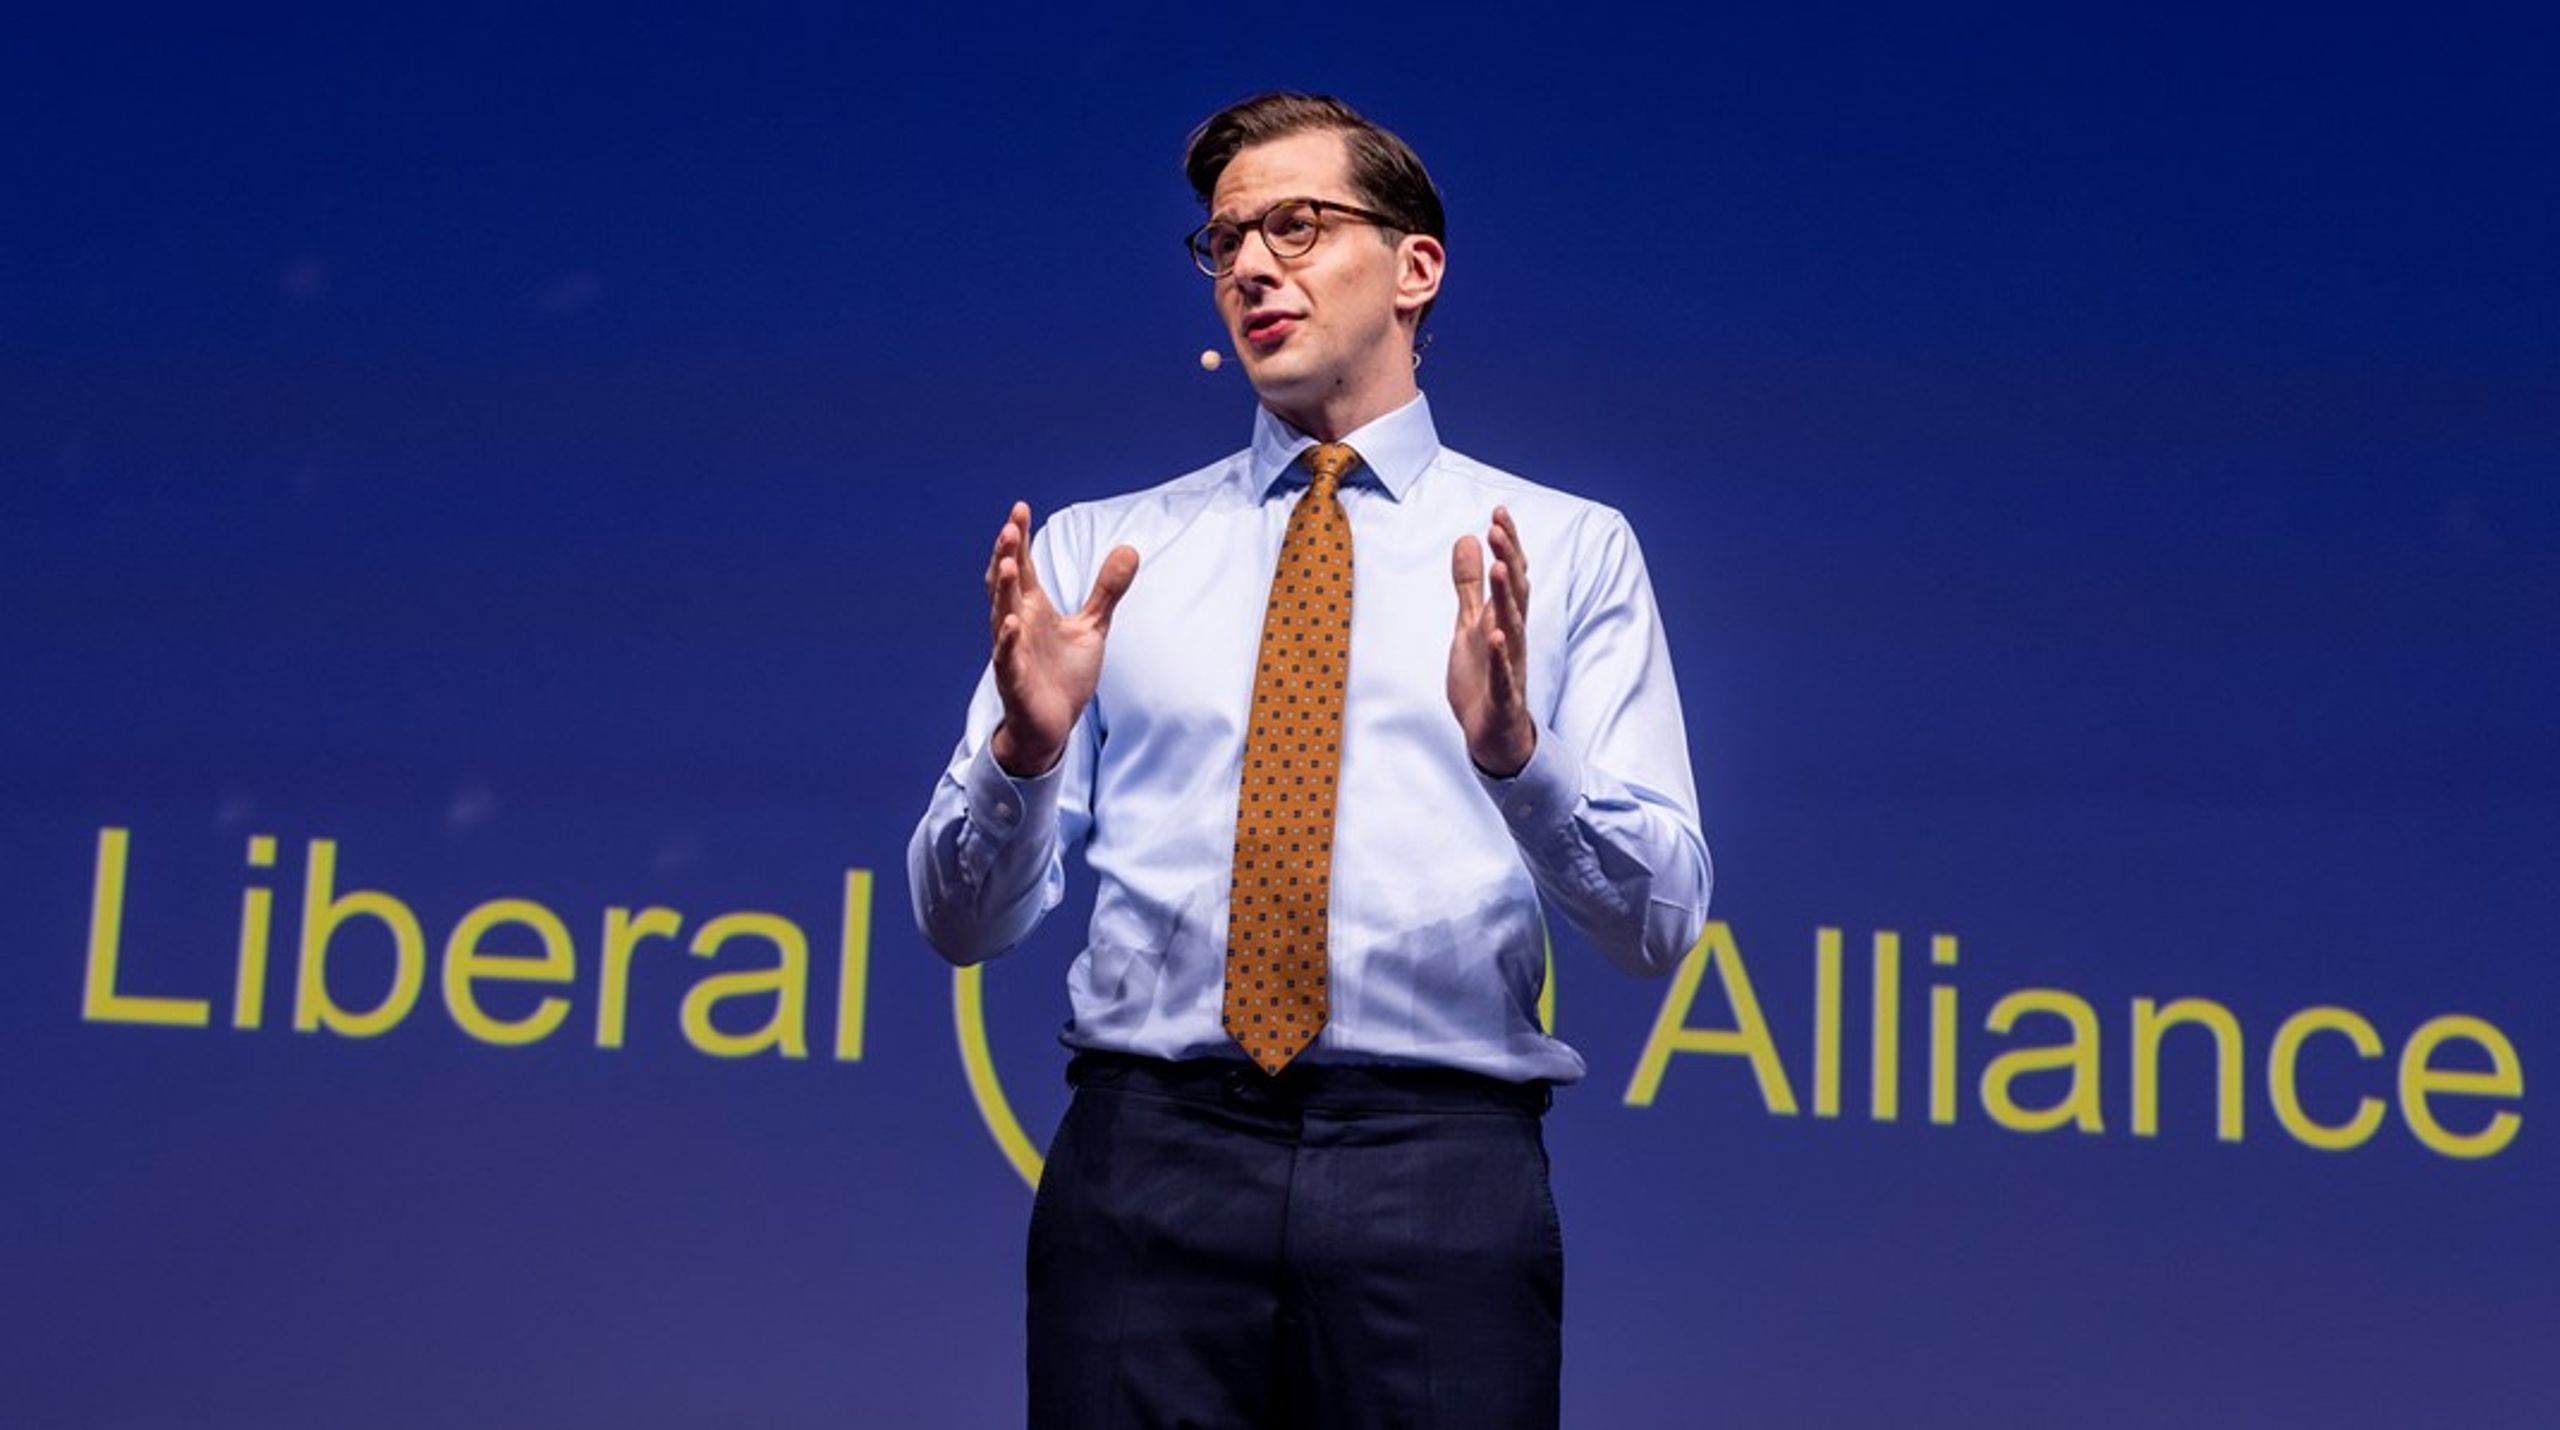 Liberal Alliance har efter fyringen af kampagnechef Mads Korsholm forfremmet den nuværende souschef for kampagne Nicholas Prüsse Hansen, der overtager stillingen efter Korsholm.